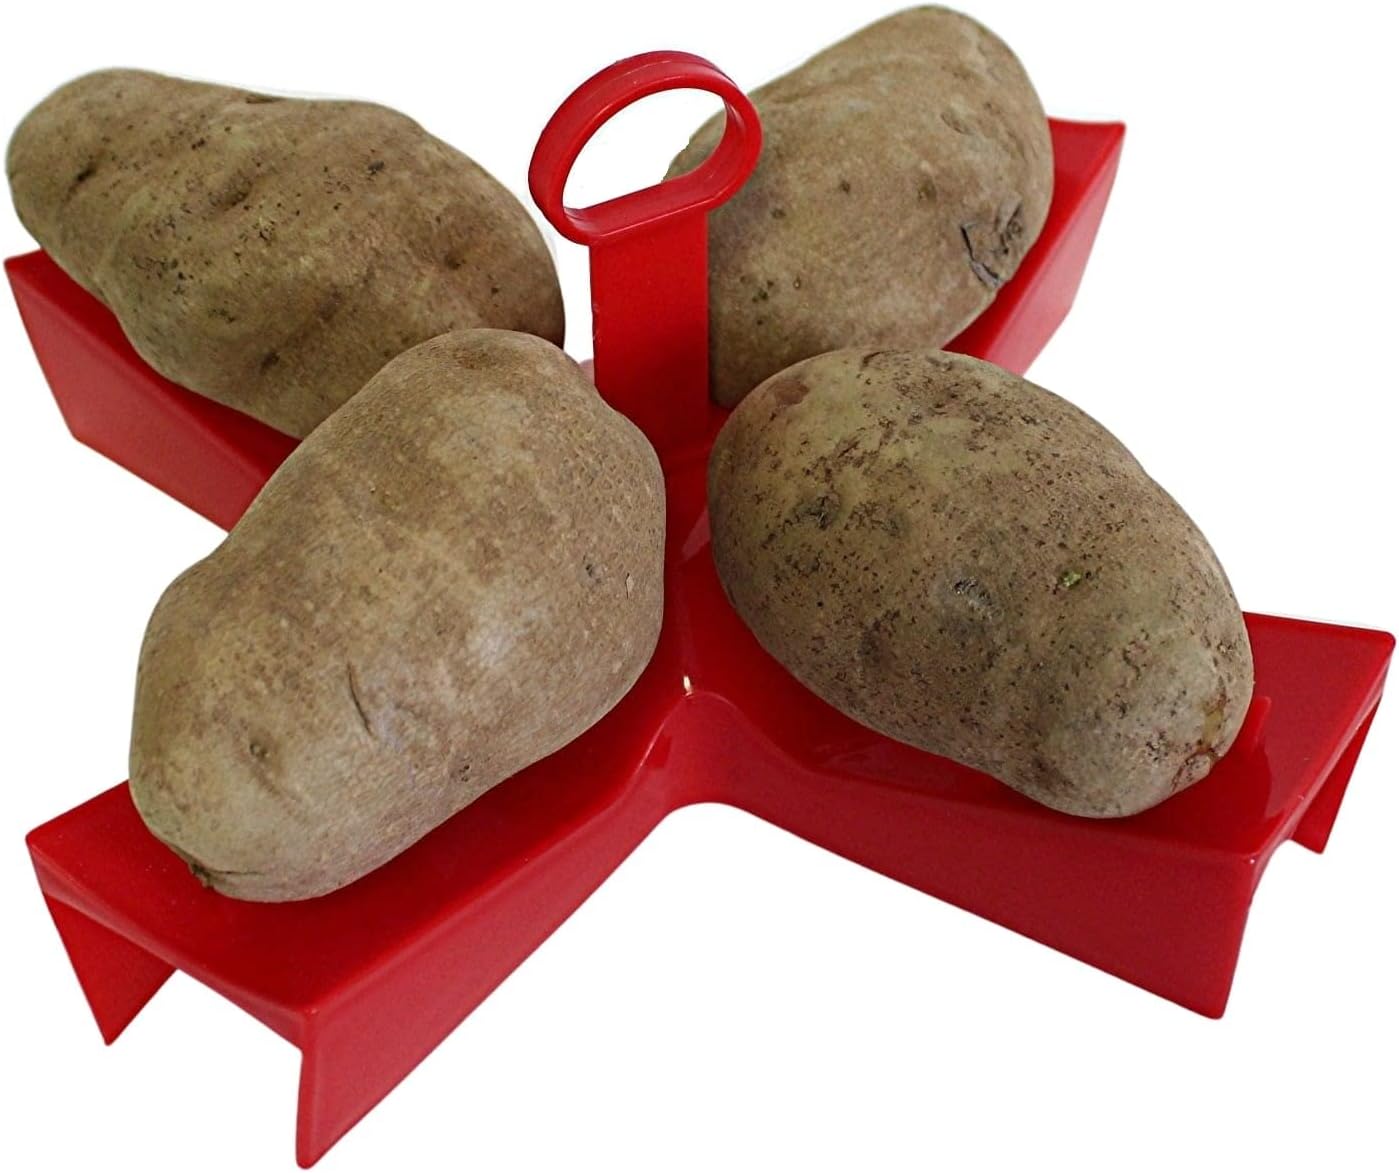 microwave baked potato maker